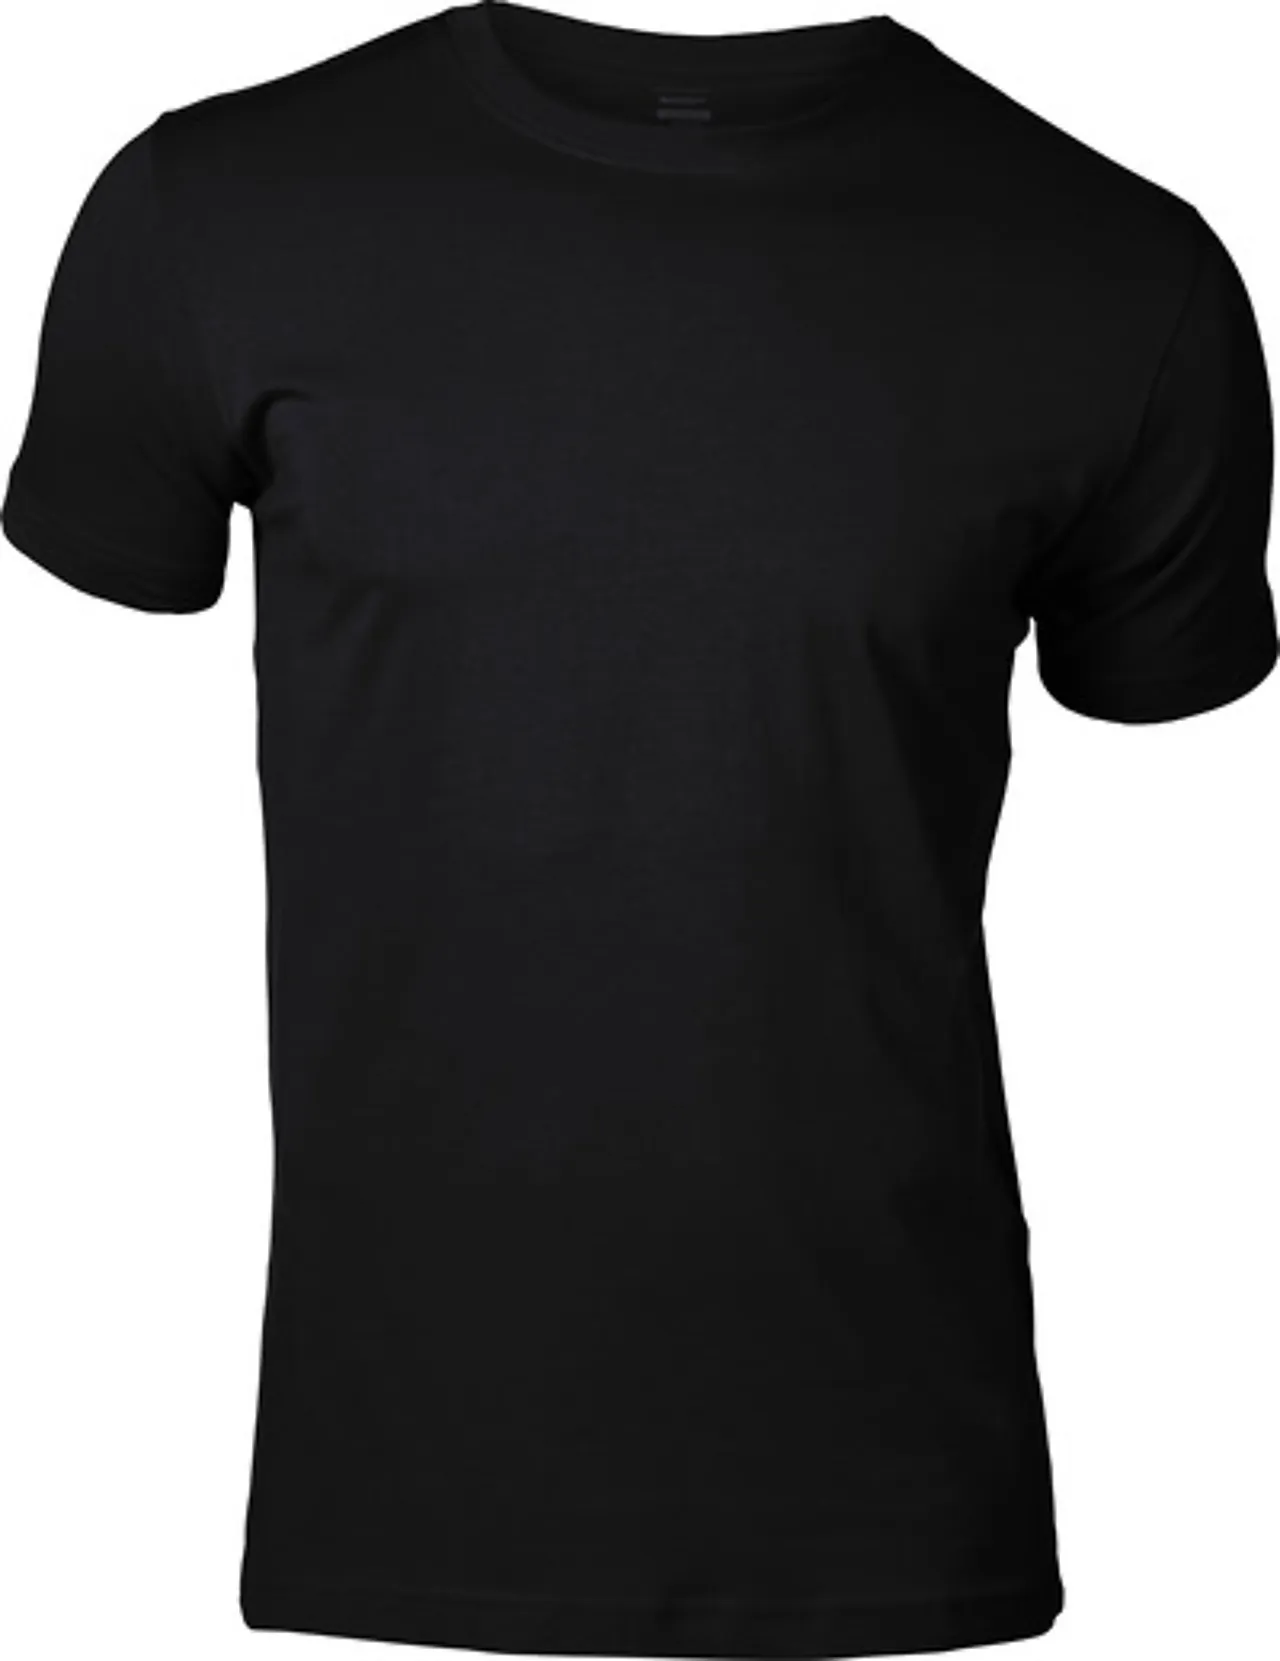 T-skjorte 51605 svart xl